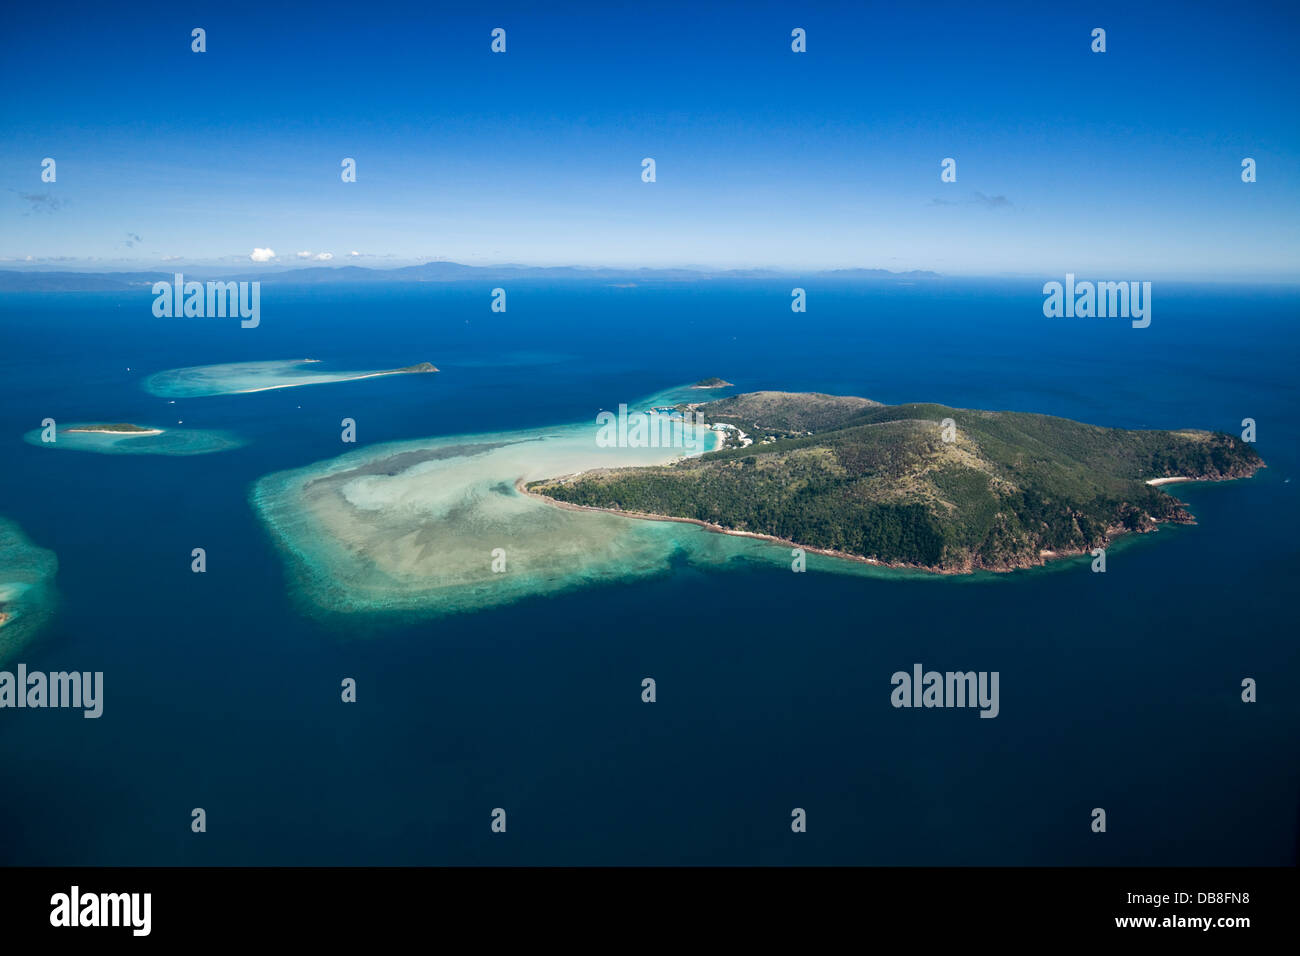 Vista aerea di Hayman Island - un'isola privata più noto per i suoi resort di lusso. Whitsunday Islands, Queensland, Australia Foto Stock